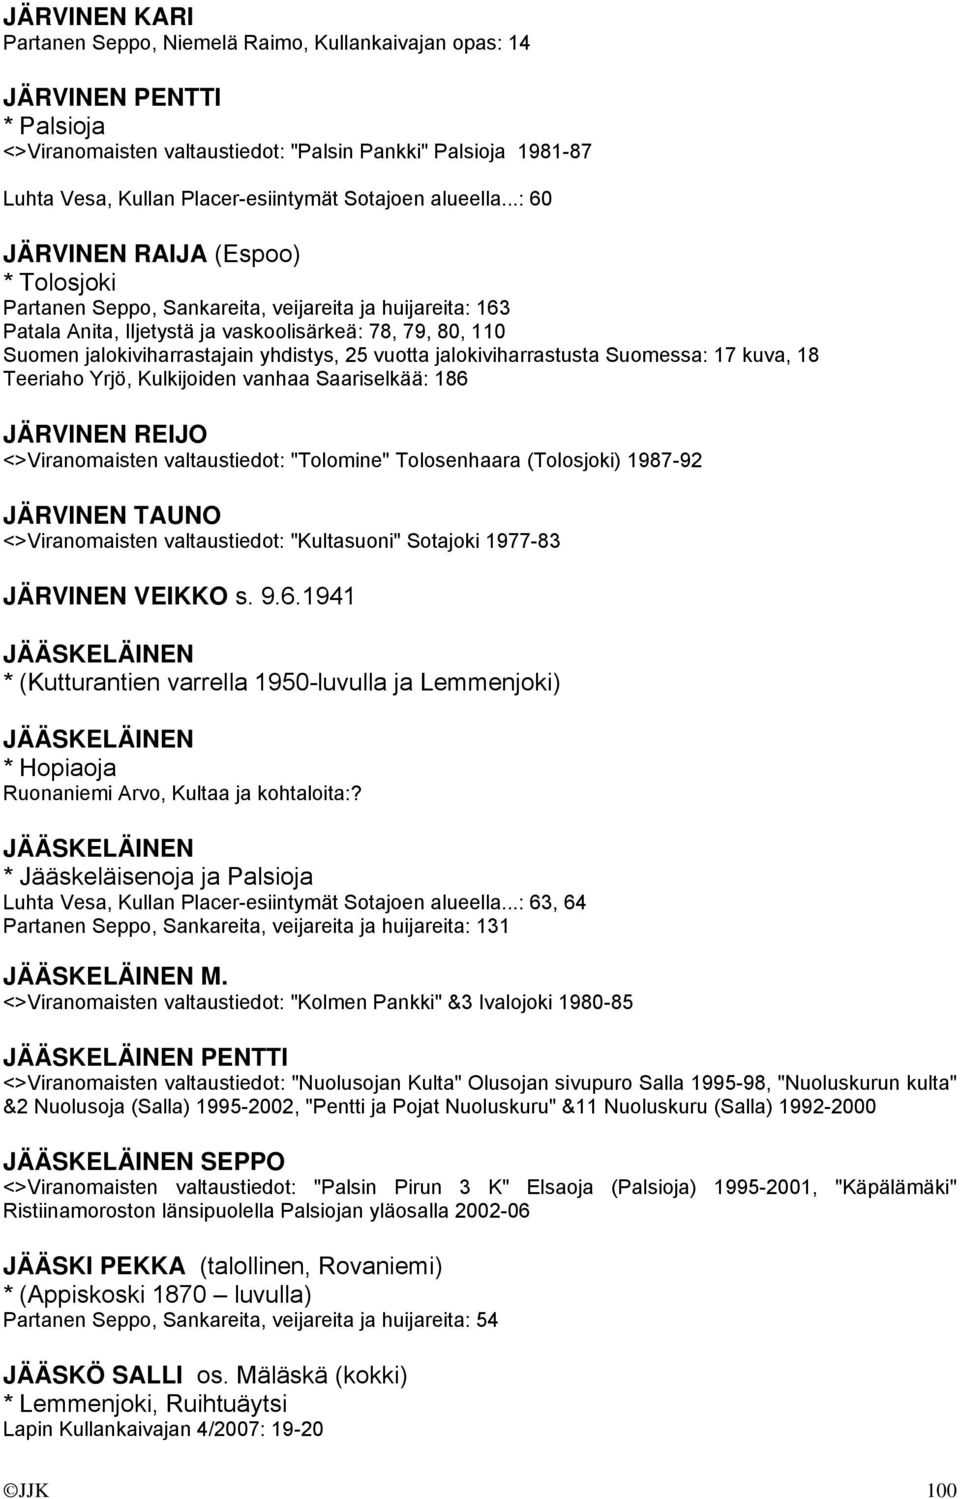 ..: 60 JÄRVINEN RAIJA (Espoo) * Tolosjoki Partanen Seppo, Sankareita, veijareita ja huijareita: 163 Patala Anita, Iljetystä ja vaskoolisärkeä: 78, 79, 80, 110 Suomen jalokiviharrastajain yhdistys, 25